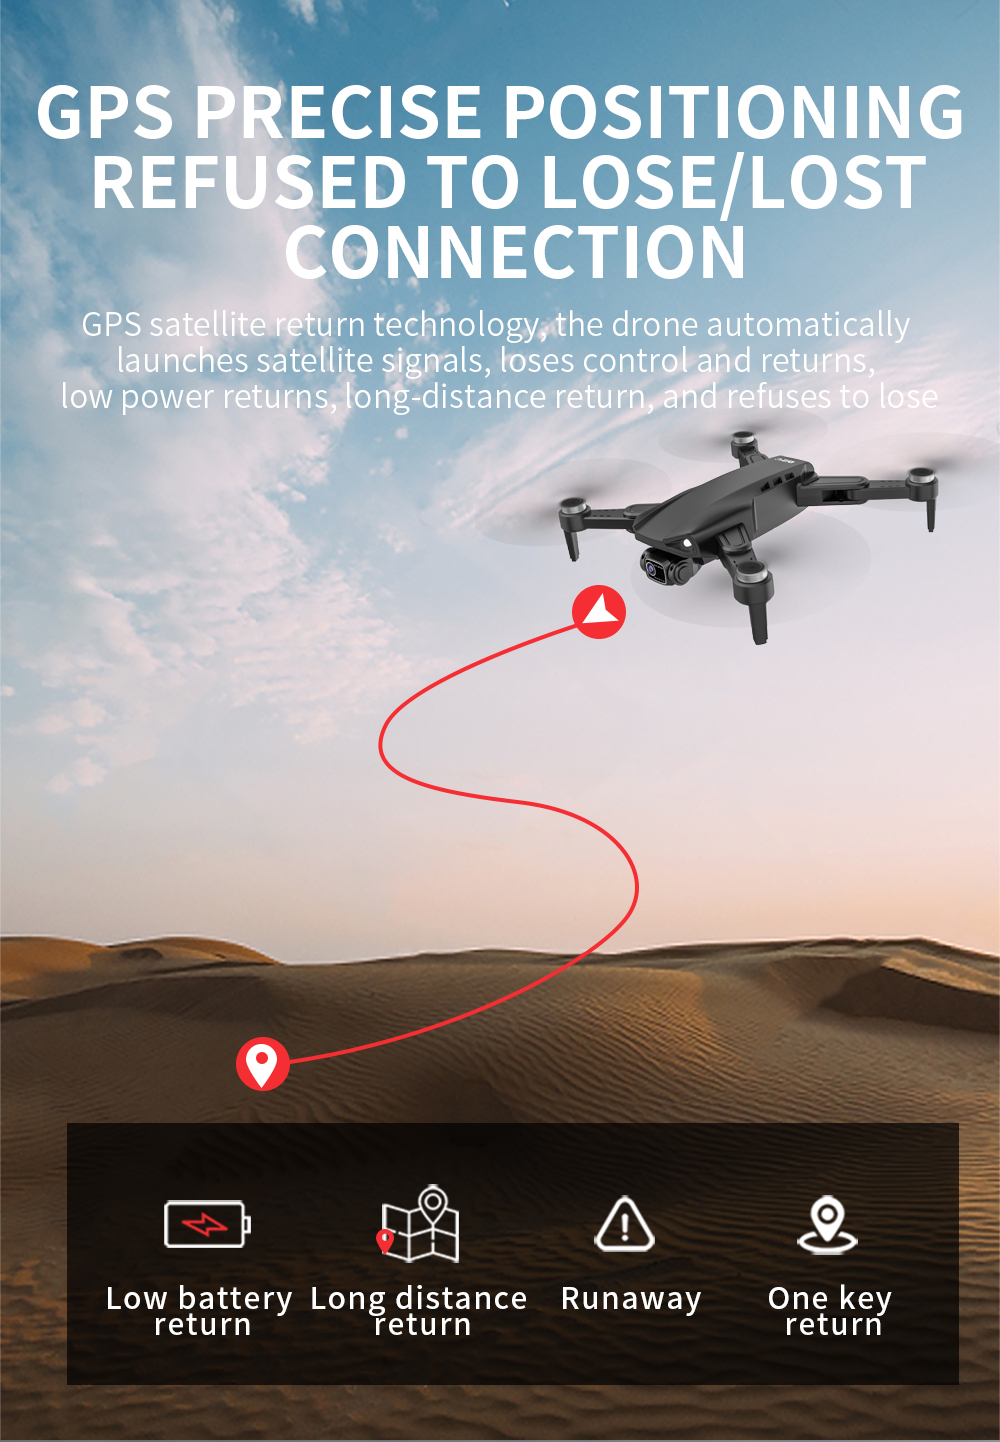 L900 PRO SE 4K HD Dual Camera Drone Visual ostacolo evitamento motore Brushless GPS 5G WIFI RC Dron Quadcopter FPV professionale